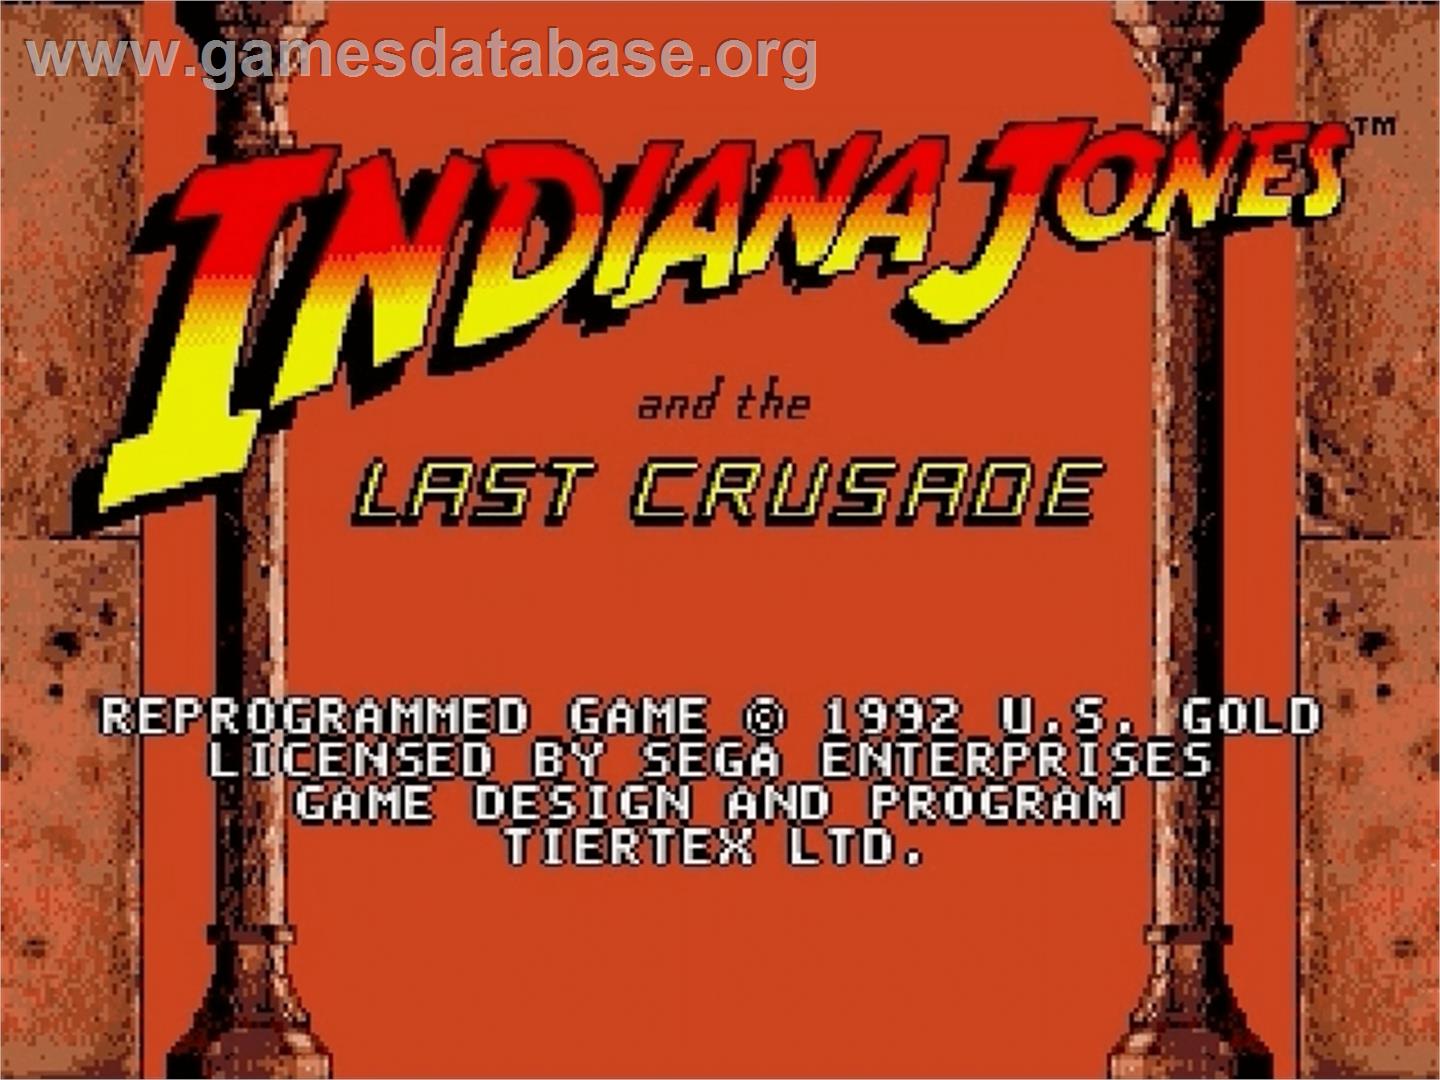 Indiana Jones and the Last Crusade: The Action Game - Sega Genesis - Artwork - Title Screen